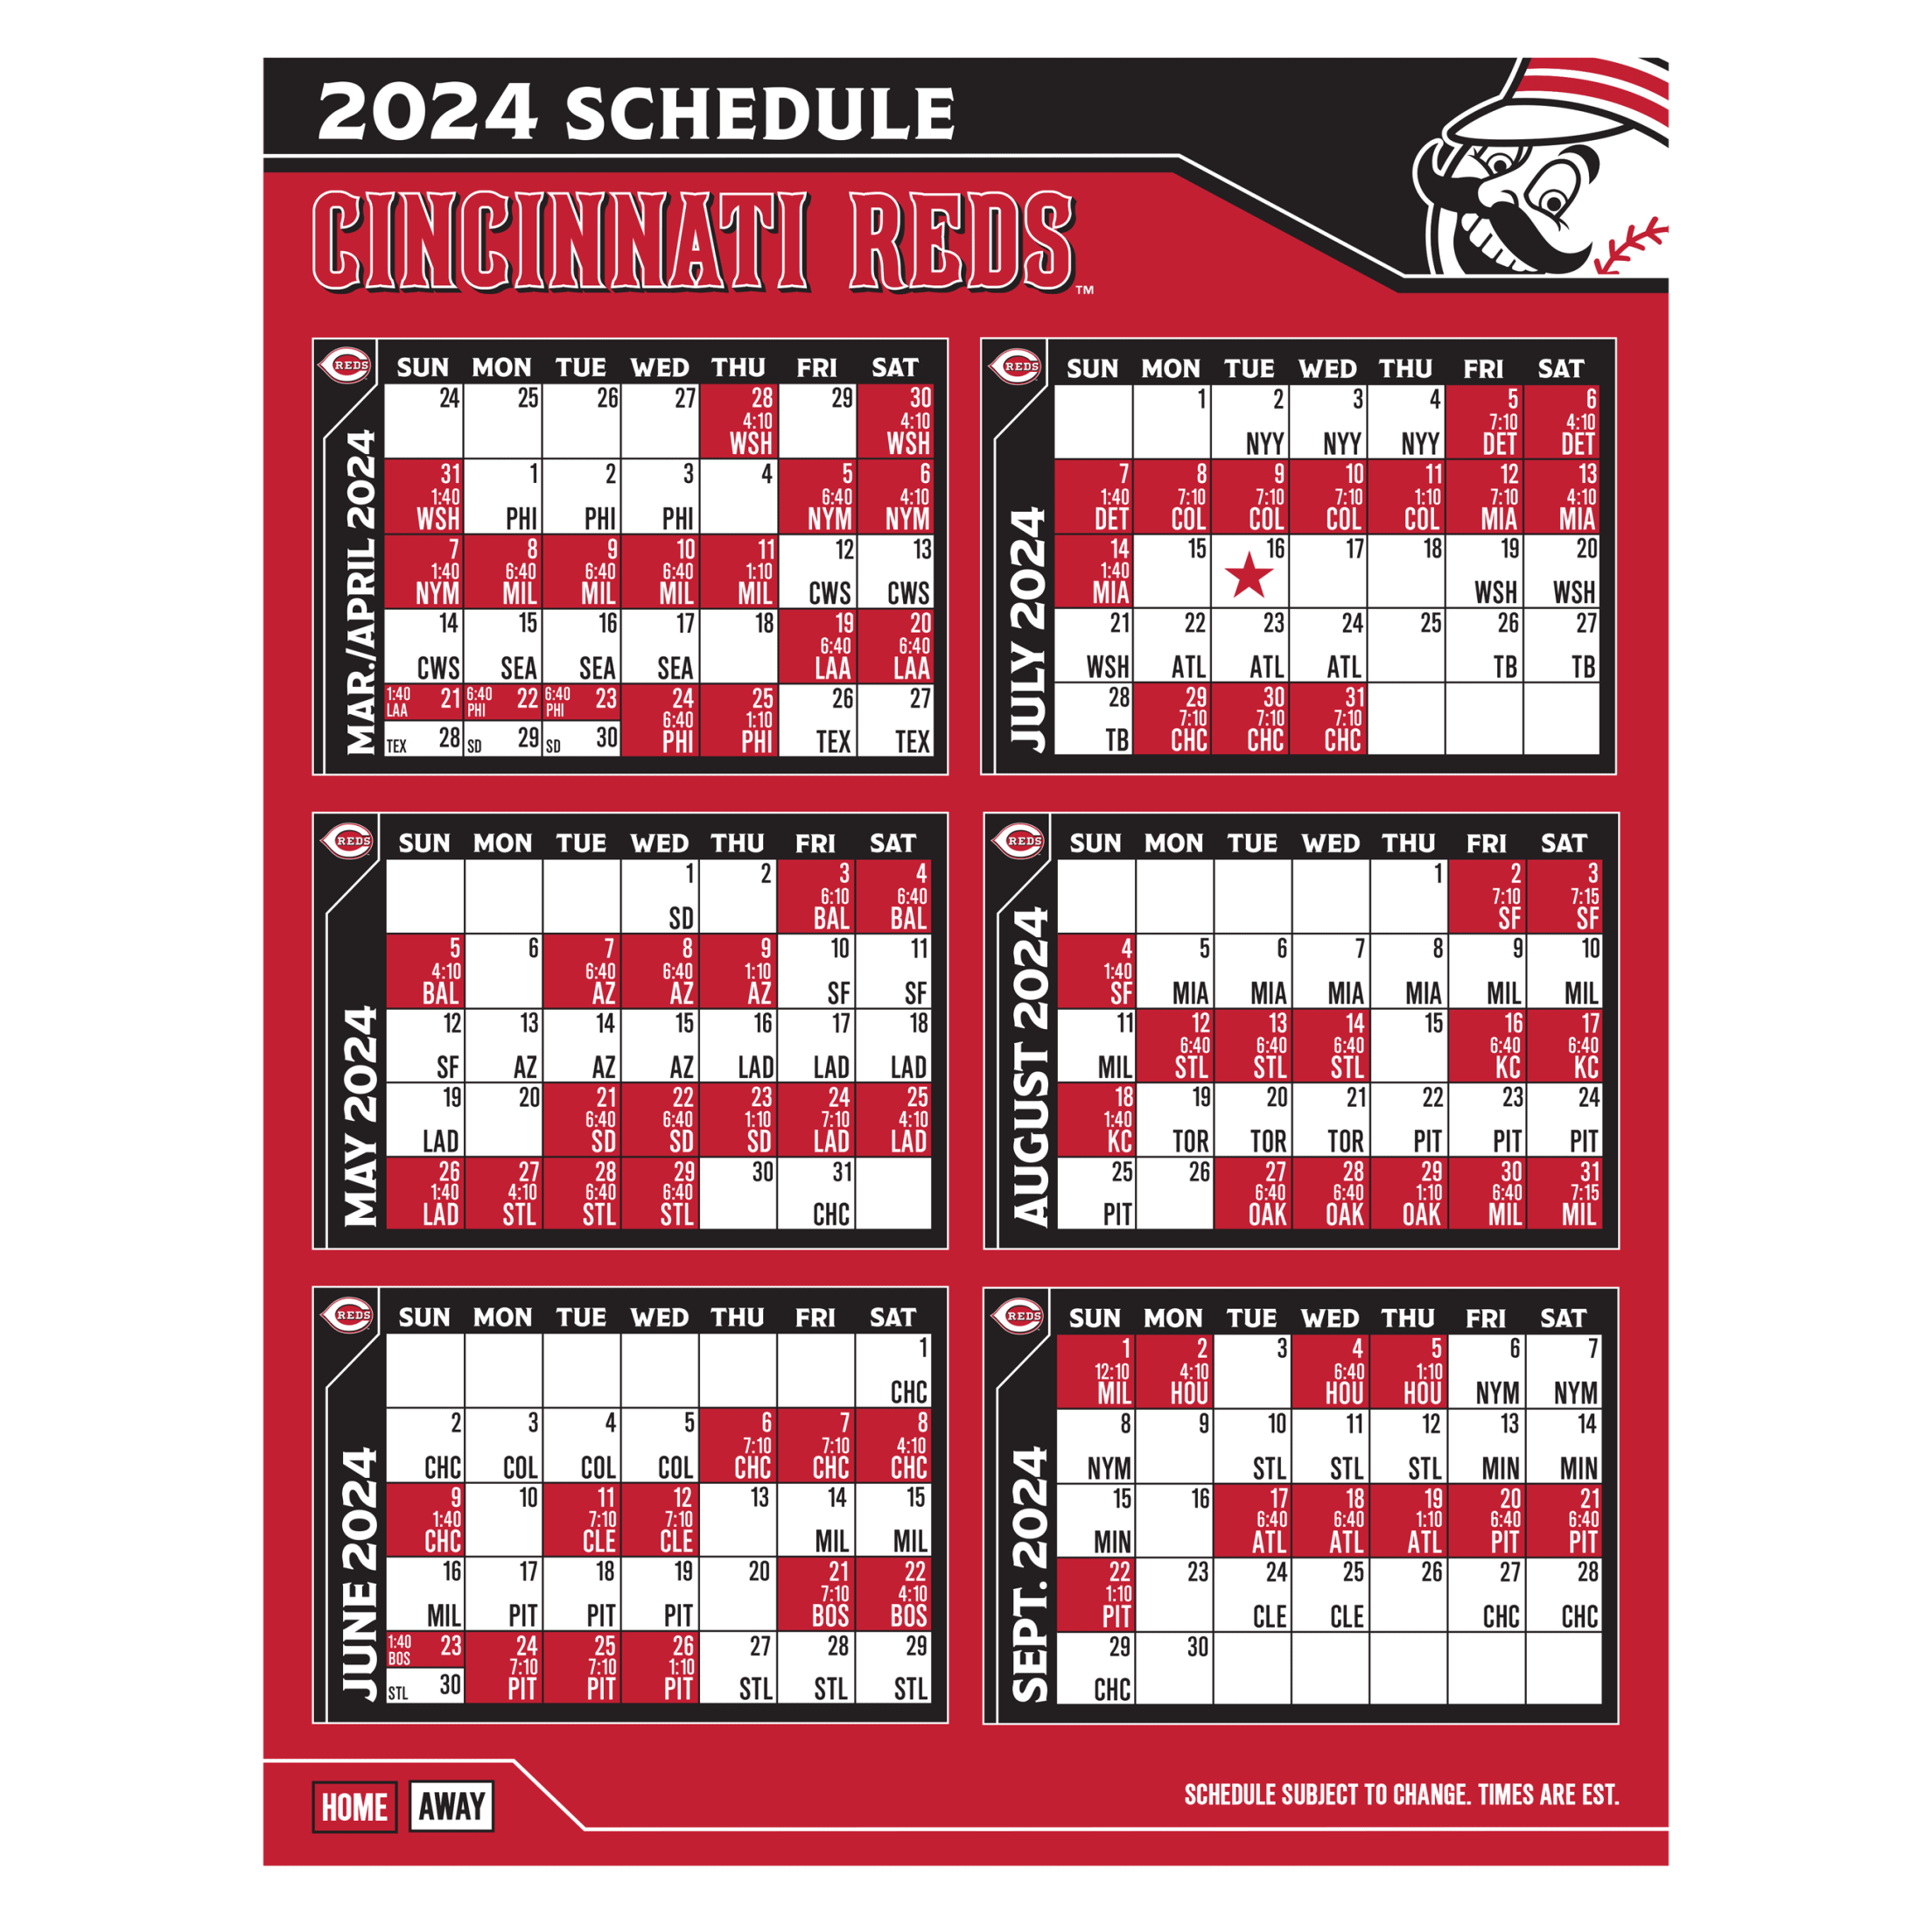 2023 Cincinnati Reds schedule announced